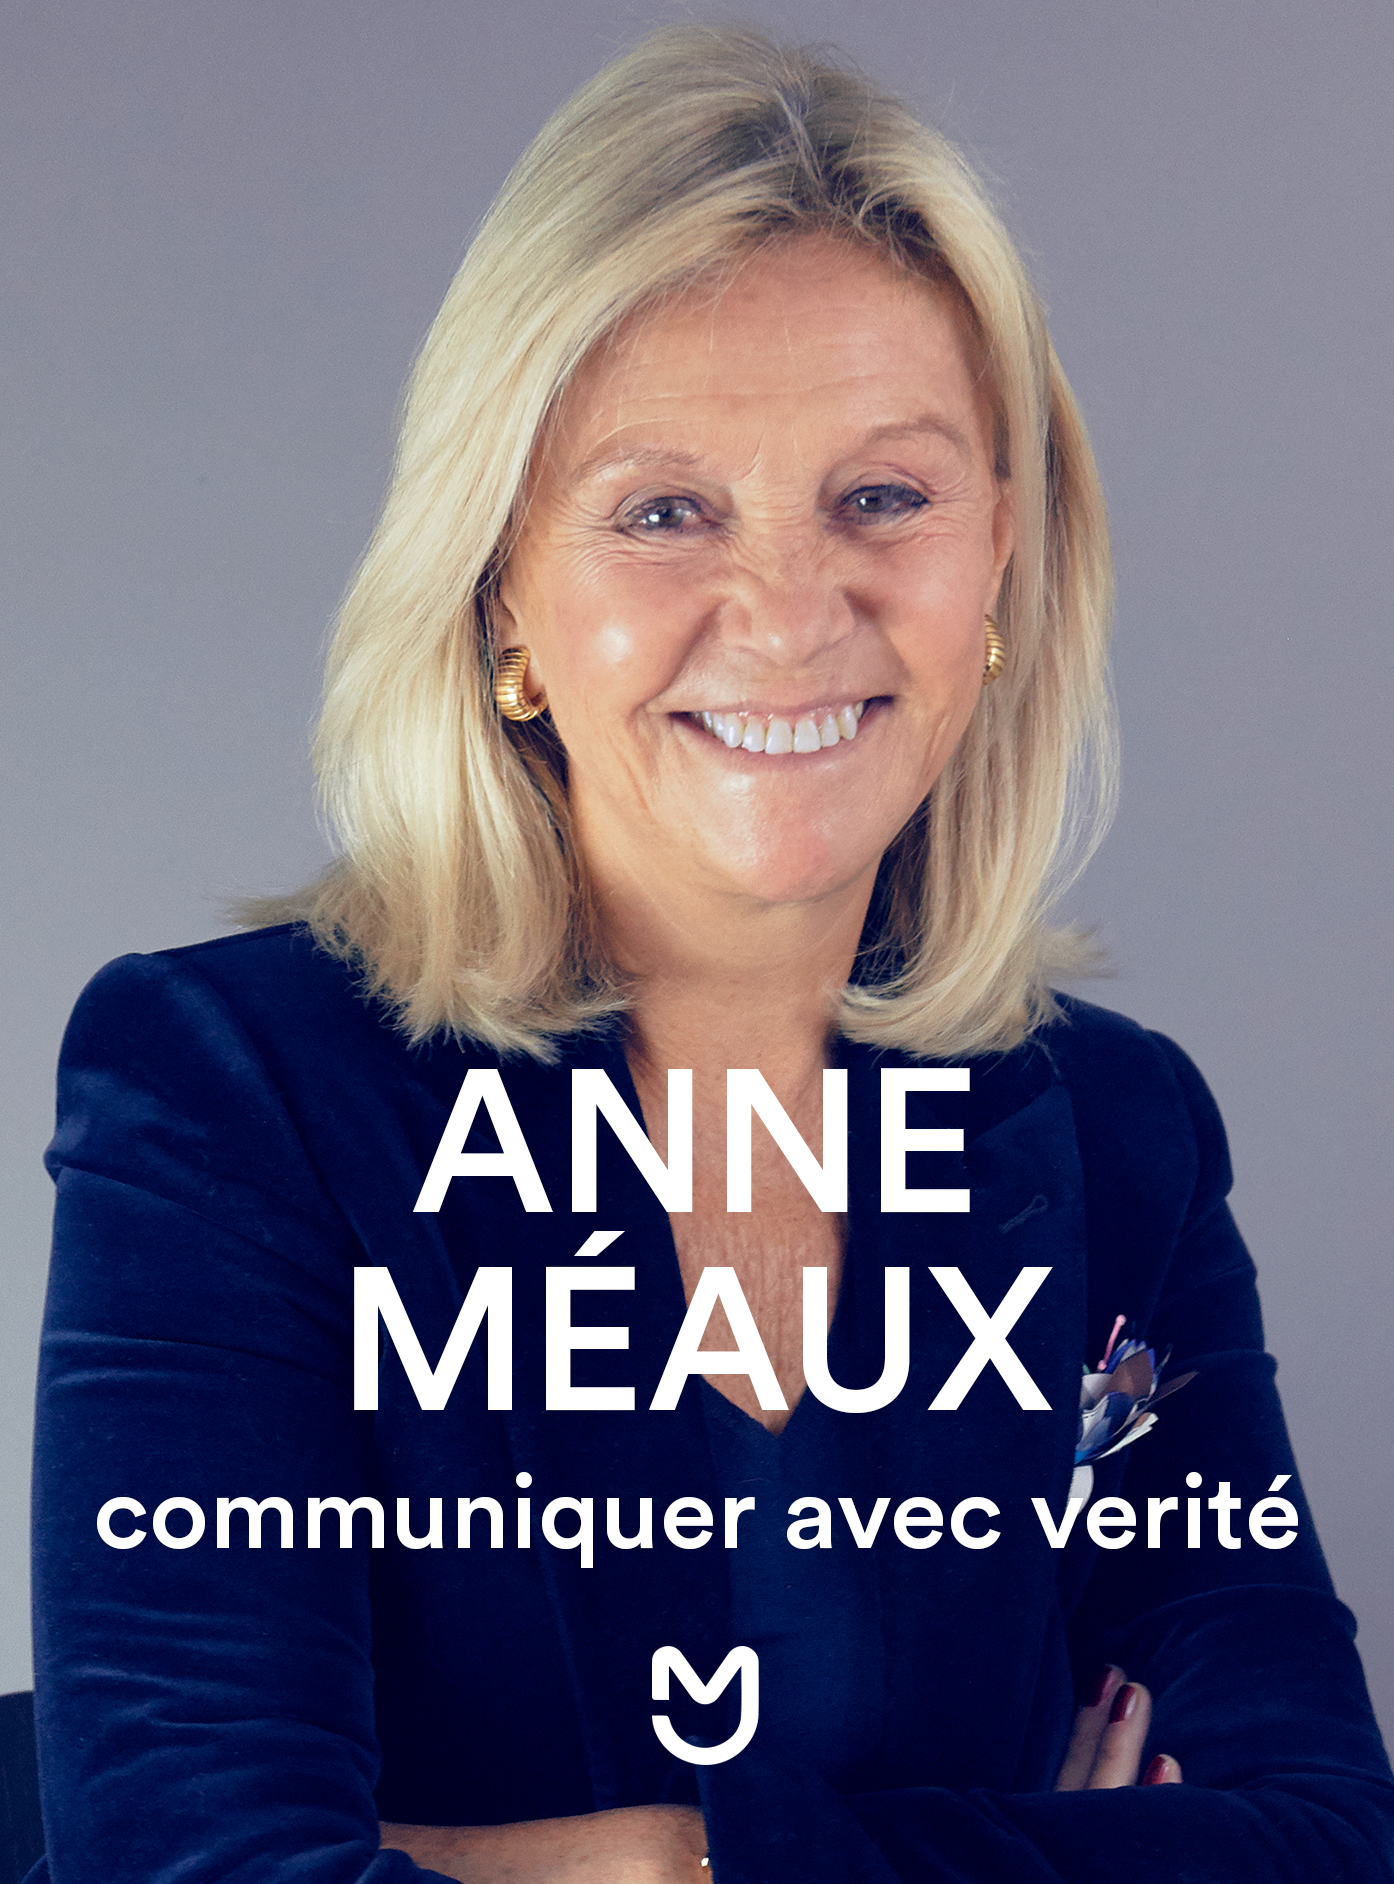 Anne Méaux, communiquer avec vérité